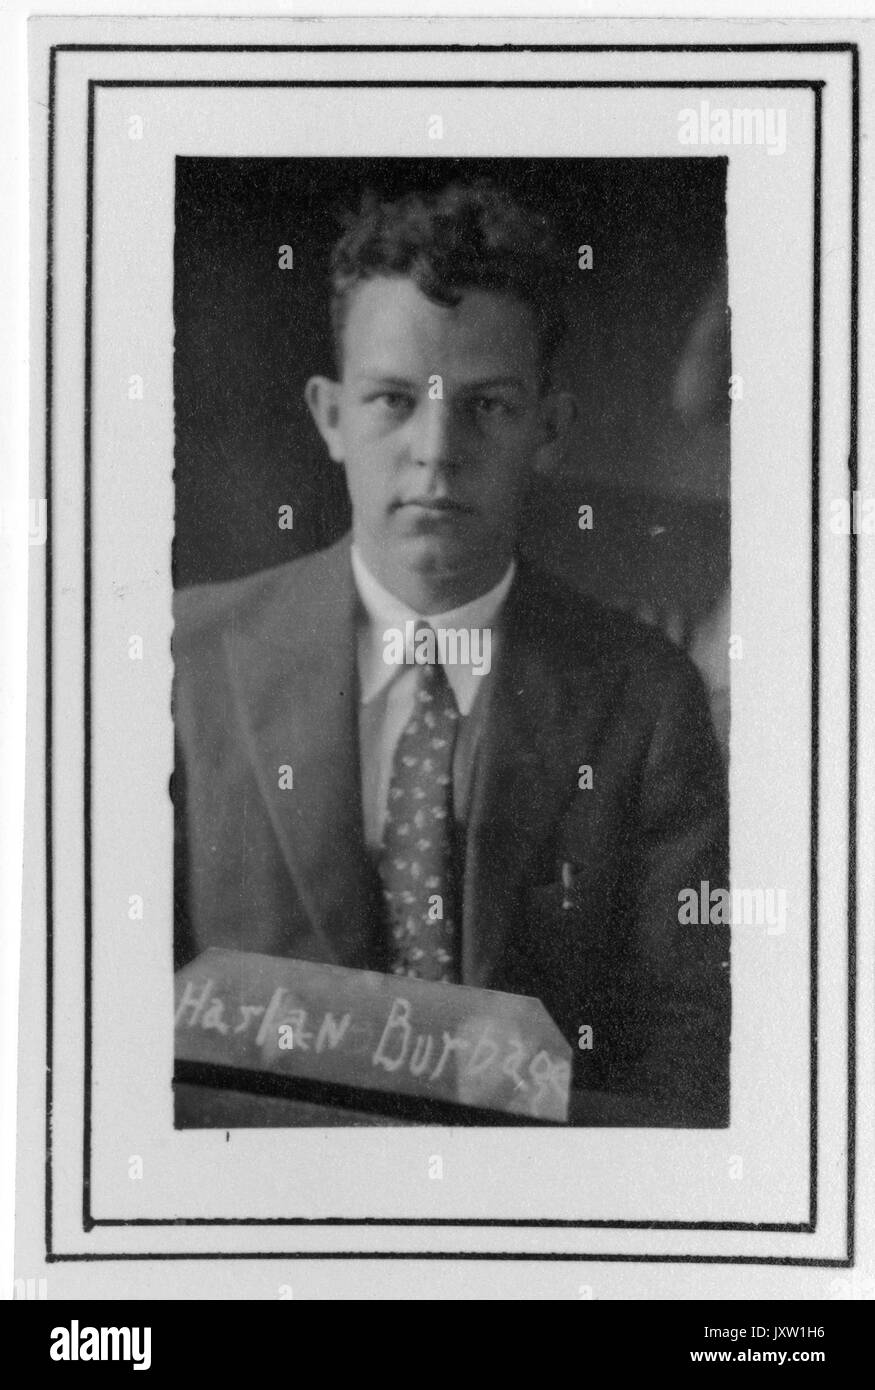 Harlan purnell Burlage, portrait Fotografie, Brustkorb, Gesicht, c 20 Jahre alter, 1931. Stockfoto